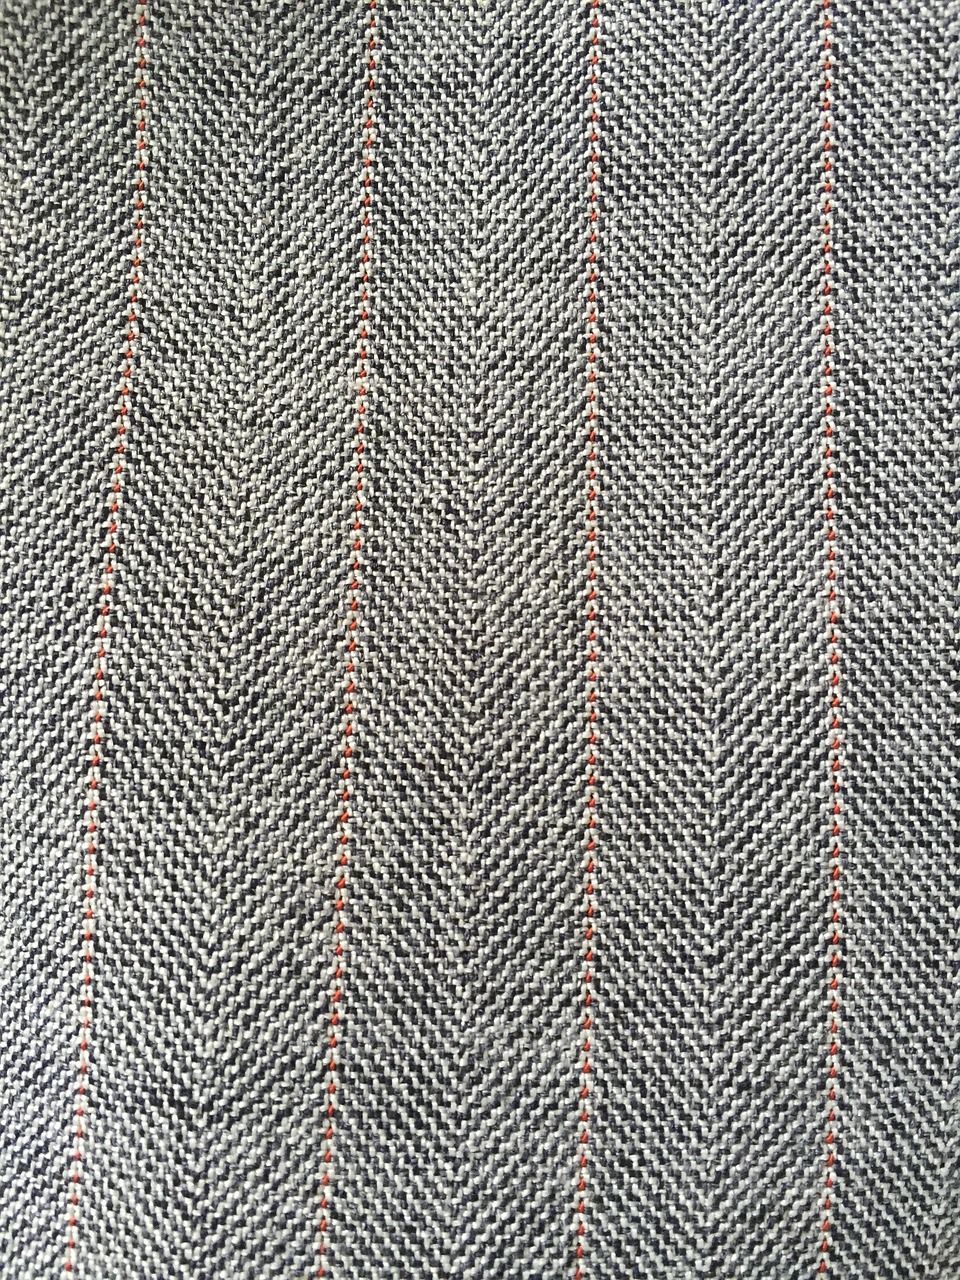 fabric herringbone pattern free photo